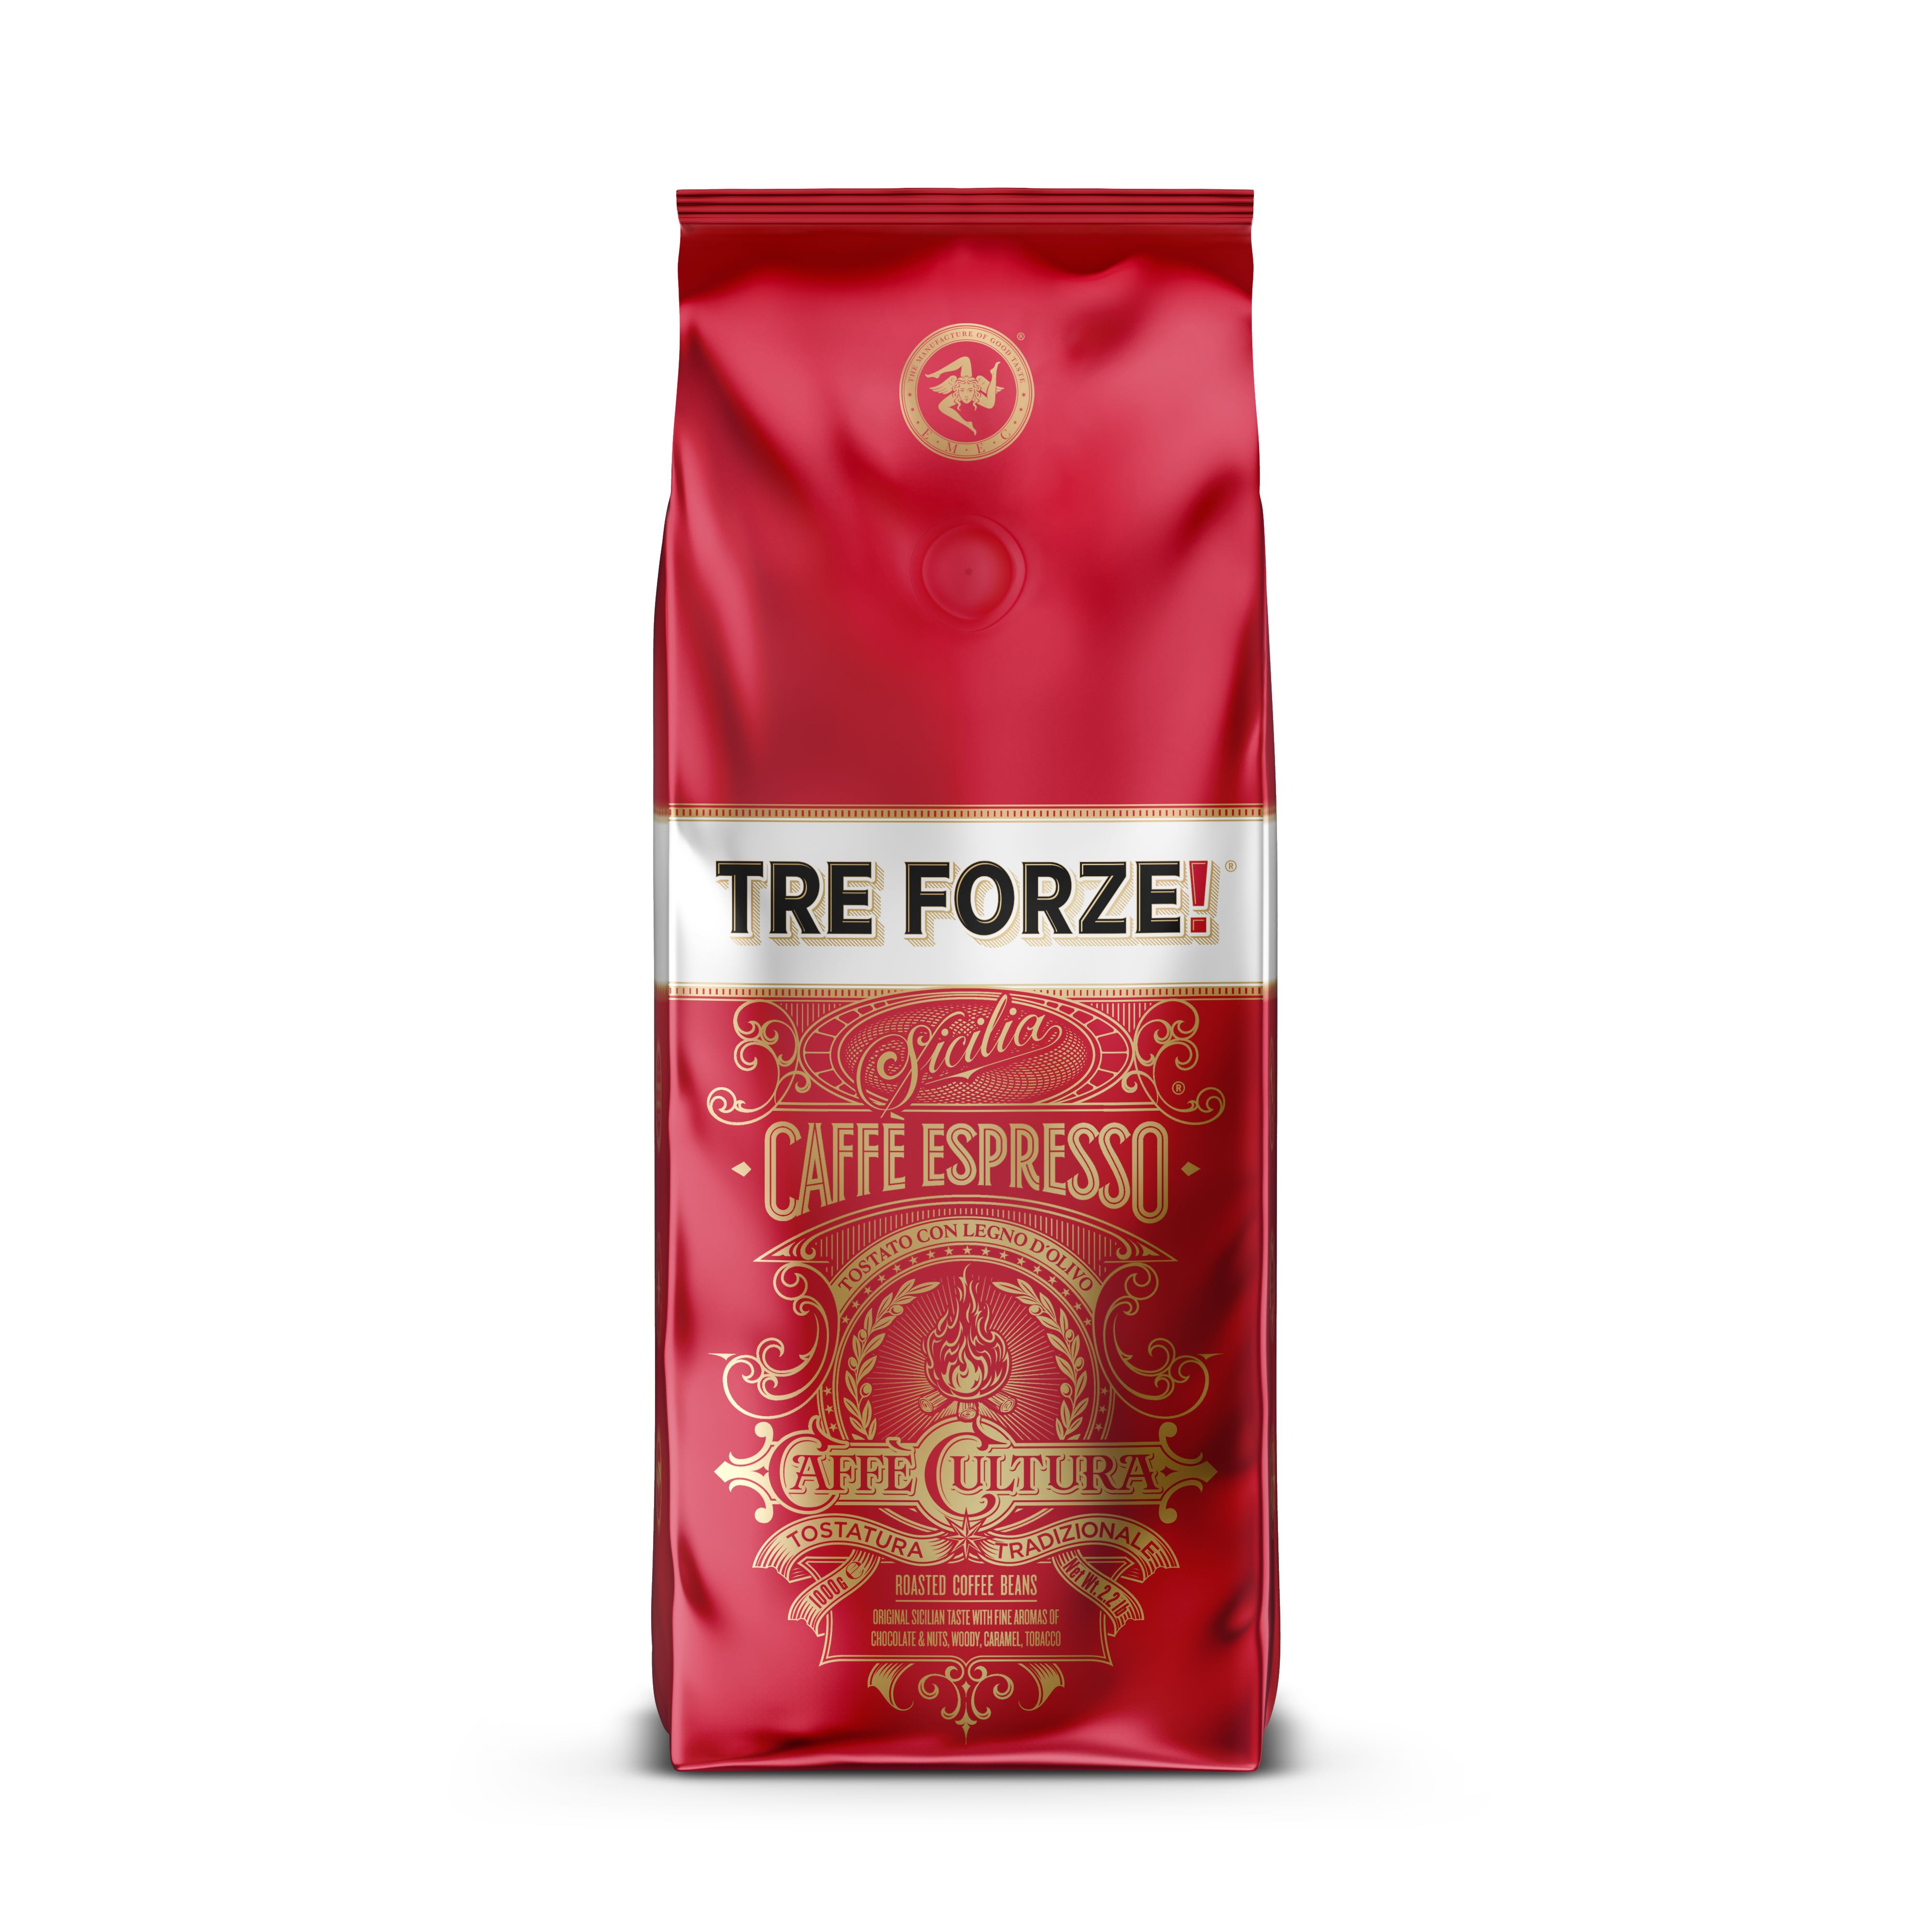 TRE FORZE! caffe-espresso 1kg